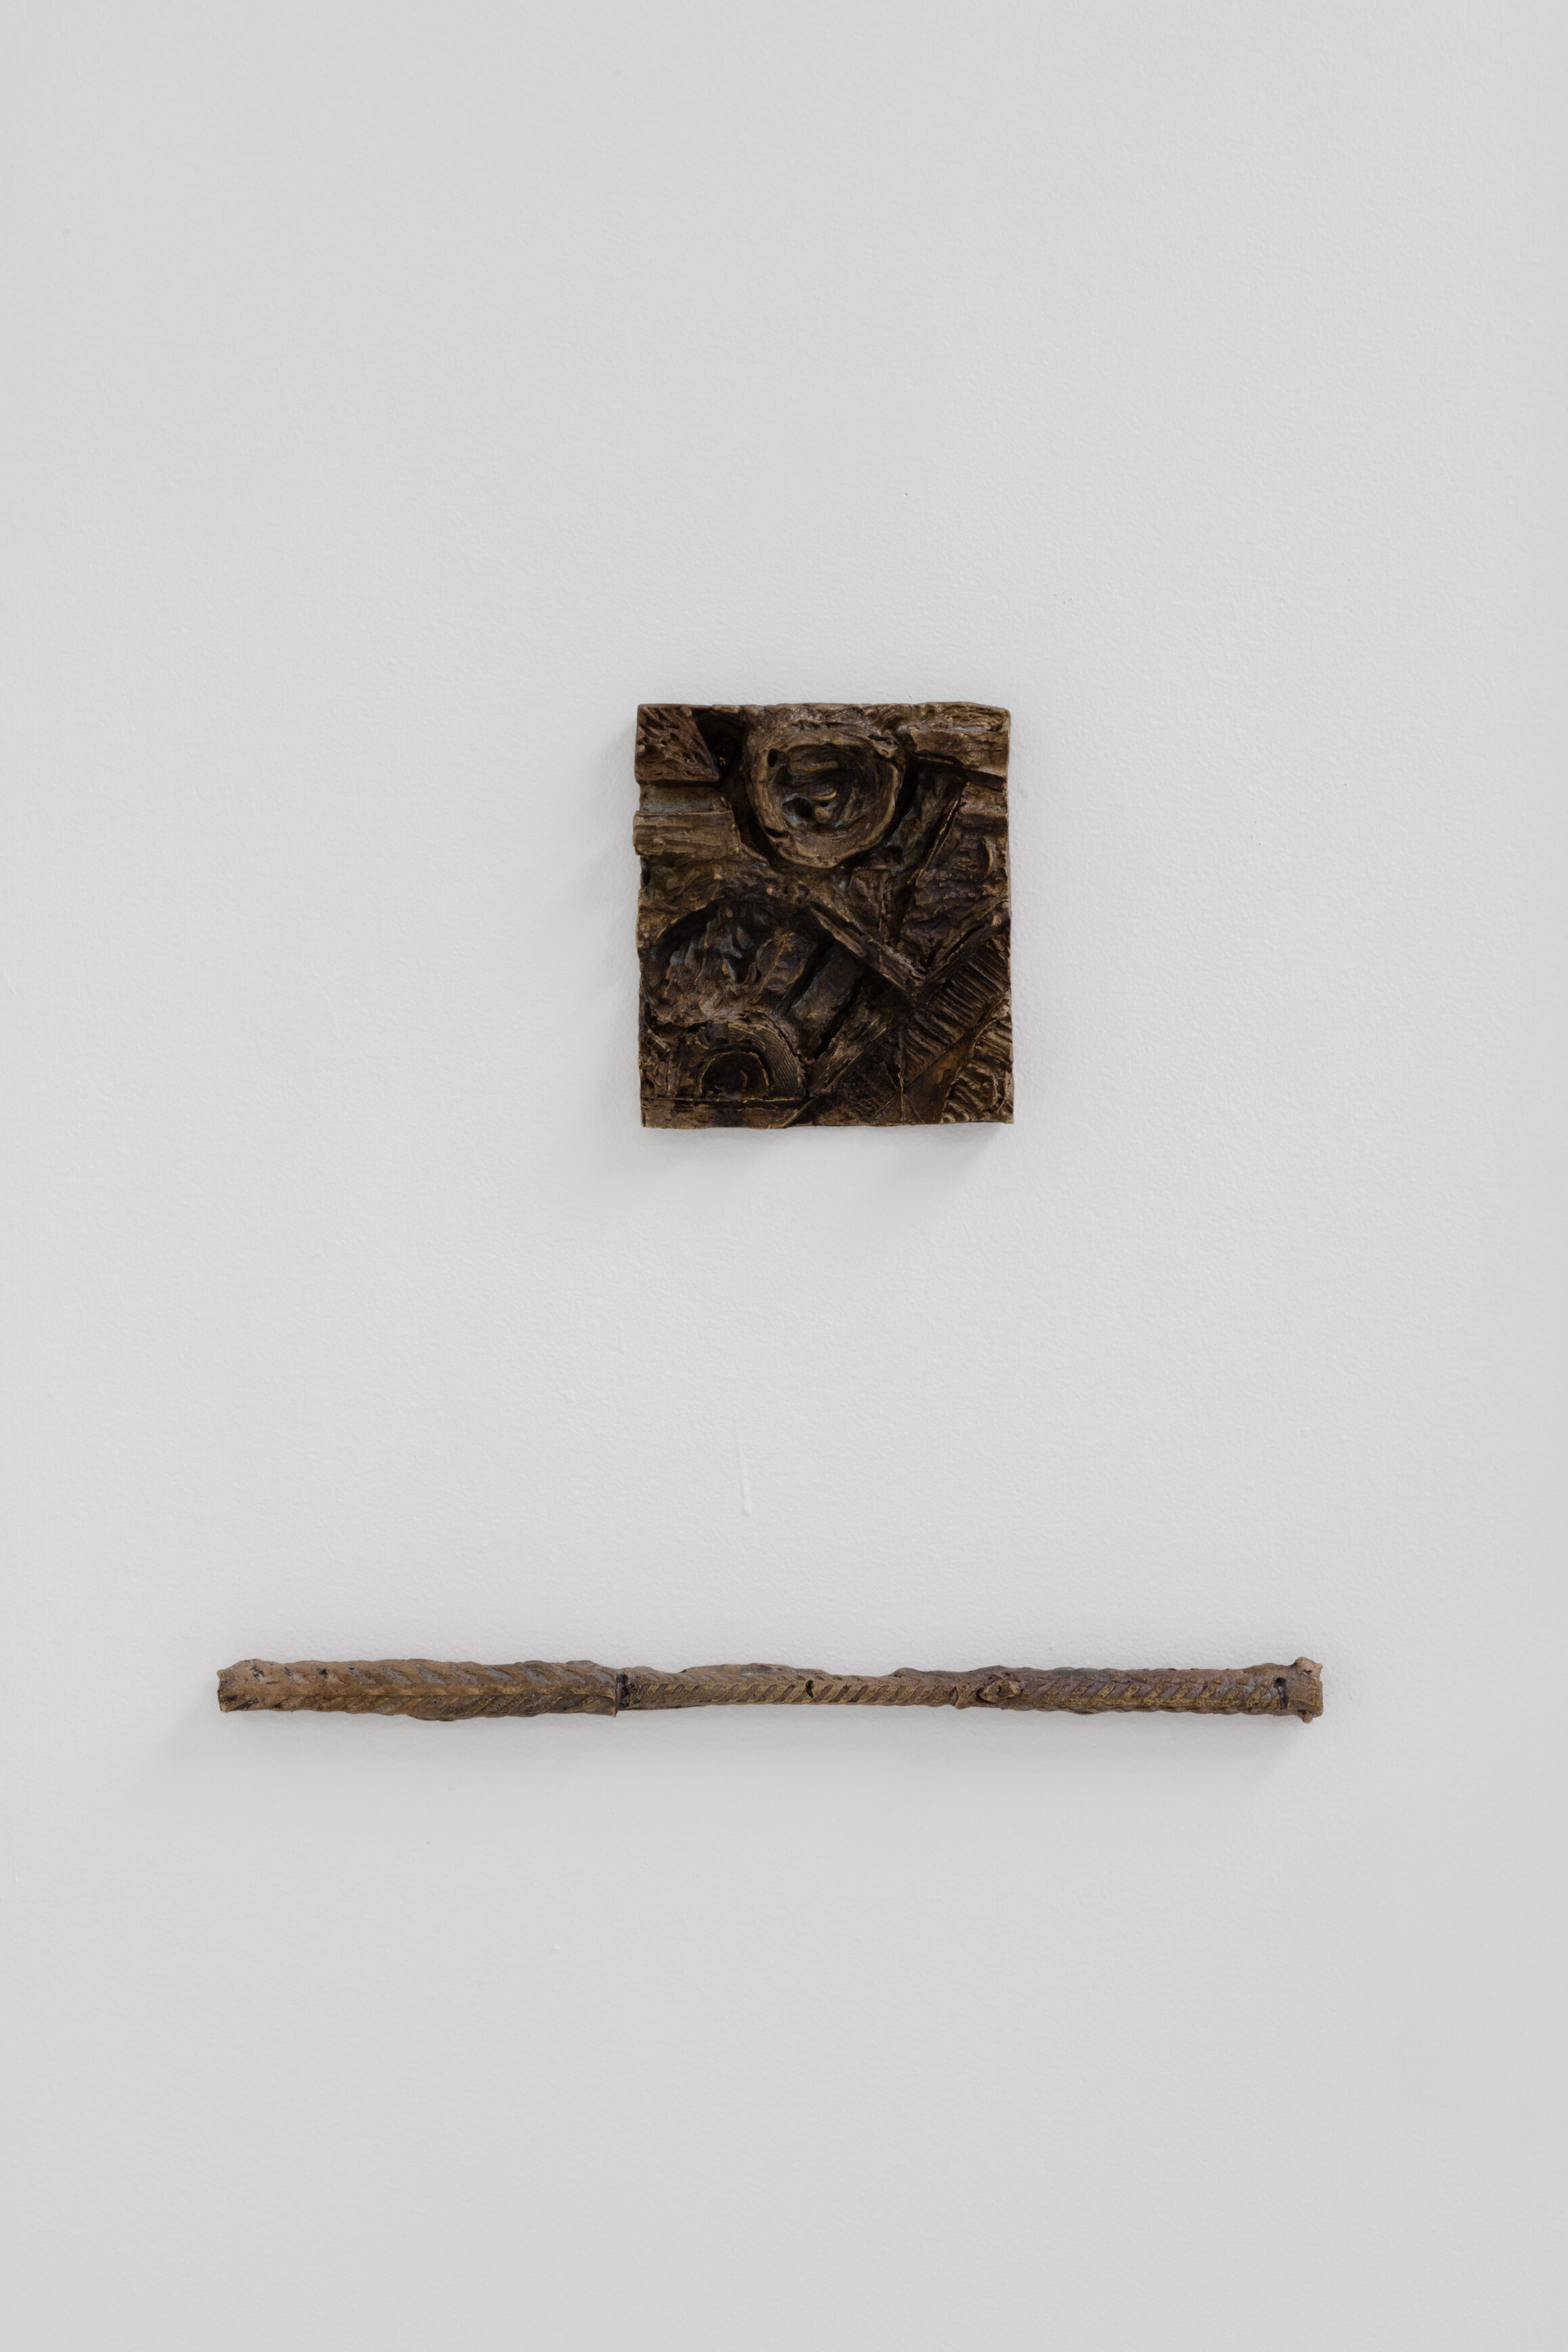  Martin Chramosta, La souche du roi, 2019, bronze, 12 x 13 cm 